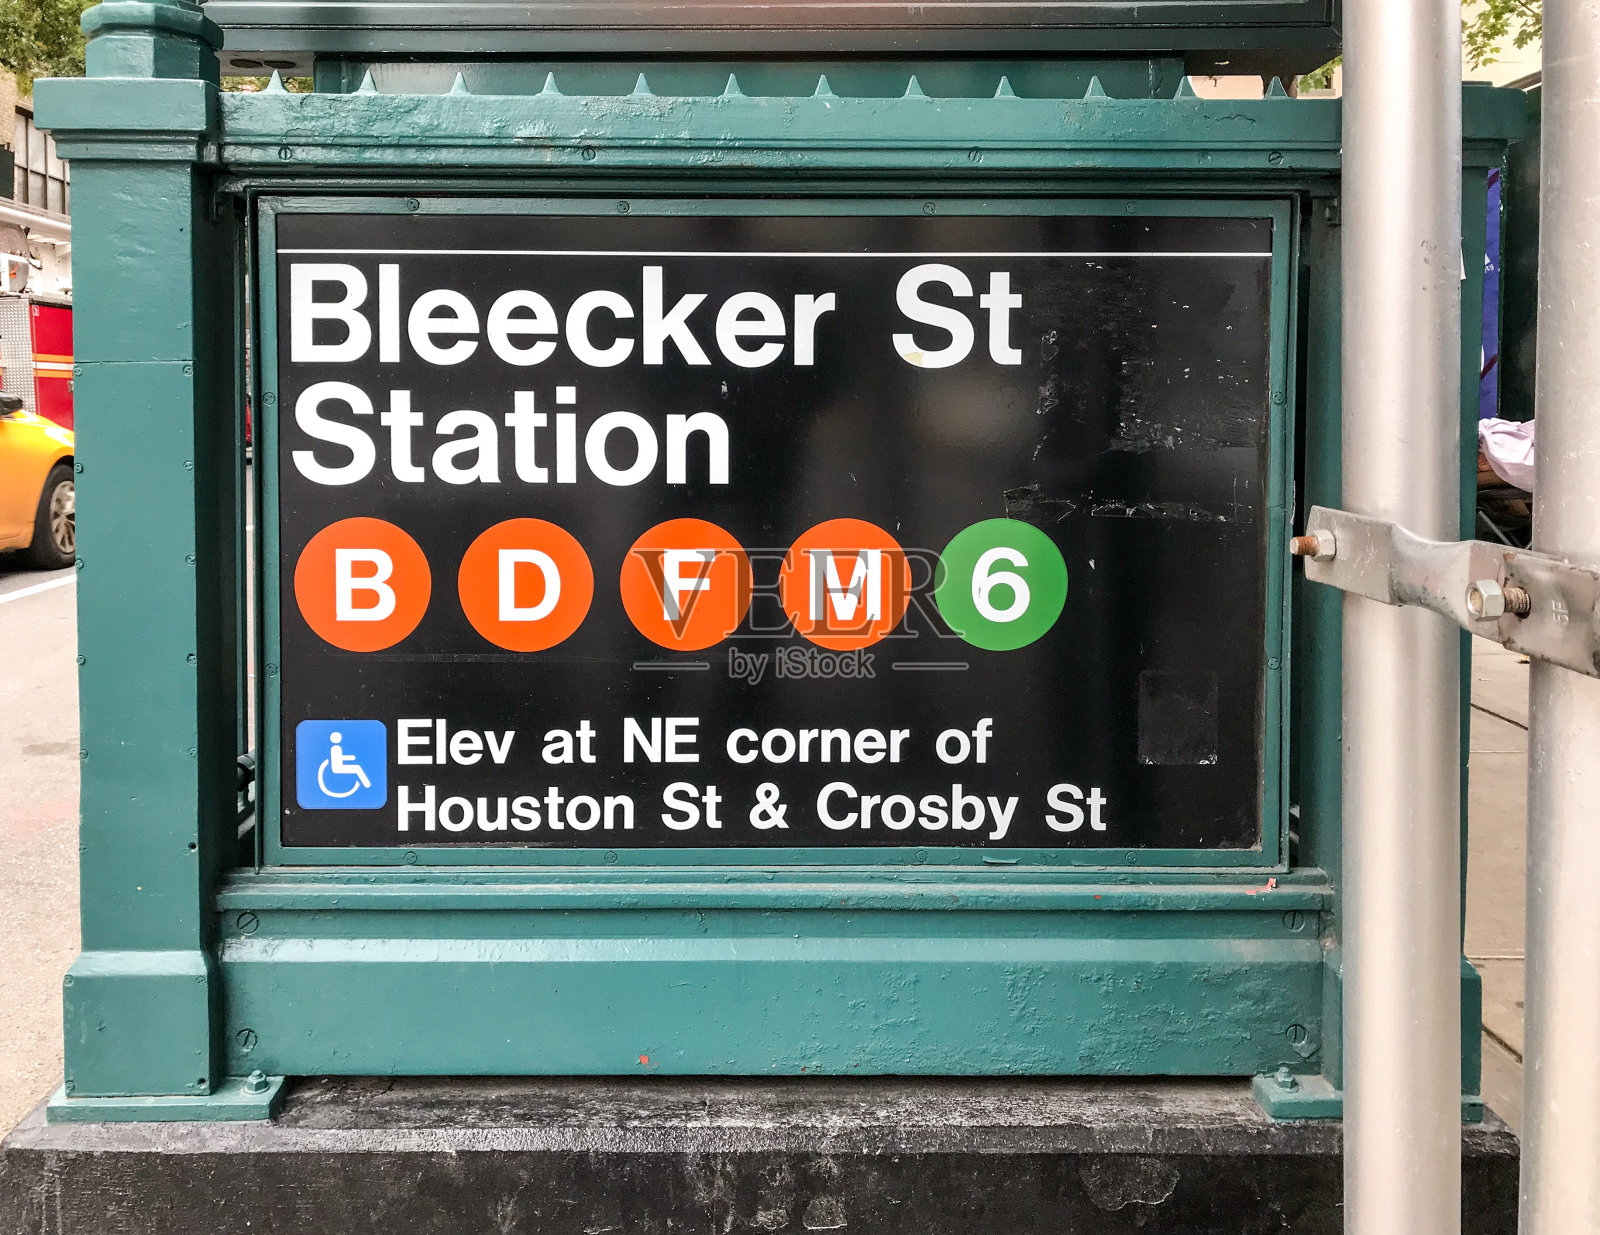 纽约市布里克街车站标志照片摄影图片